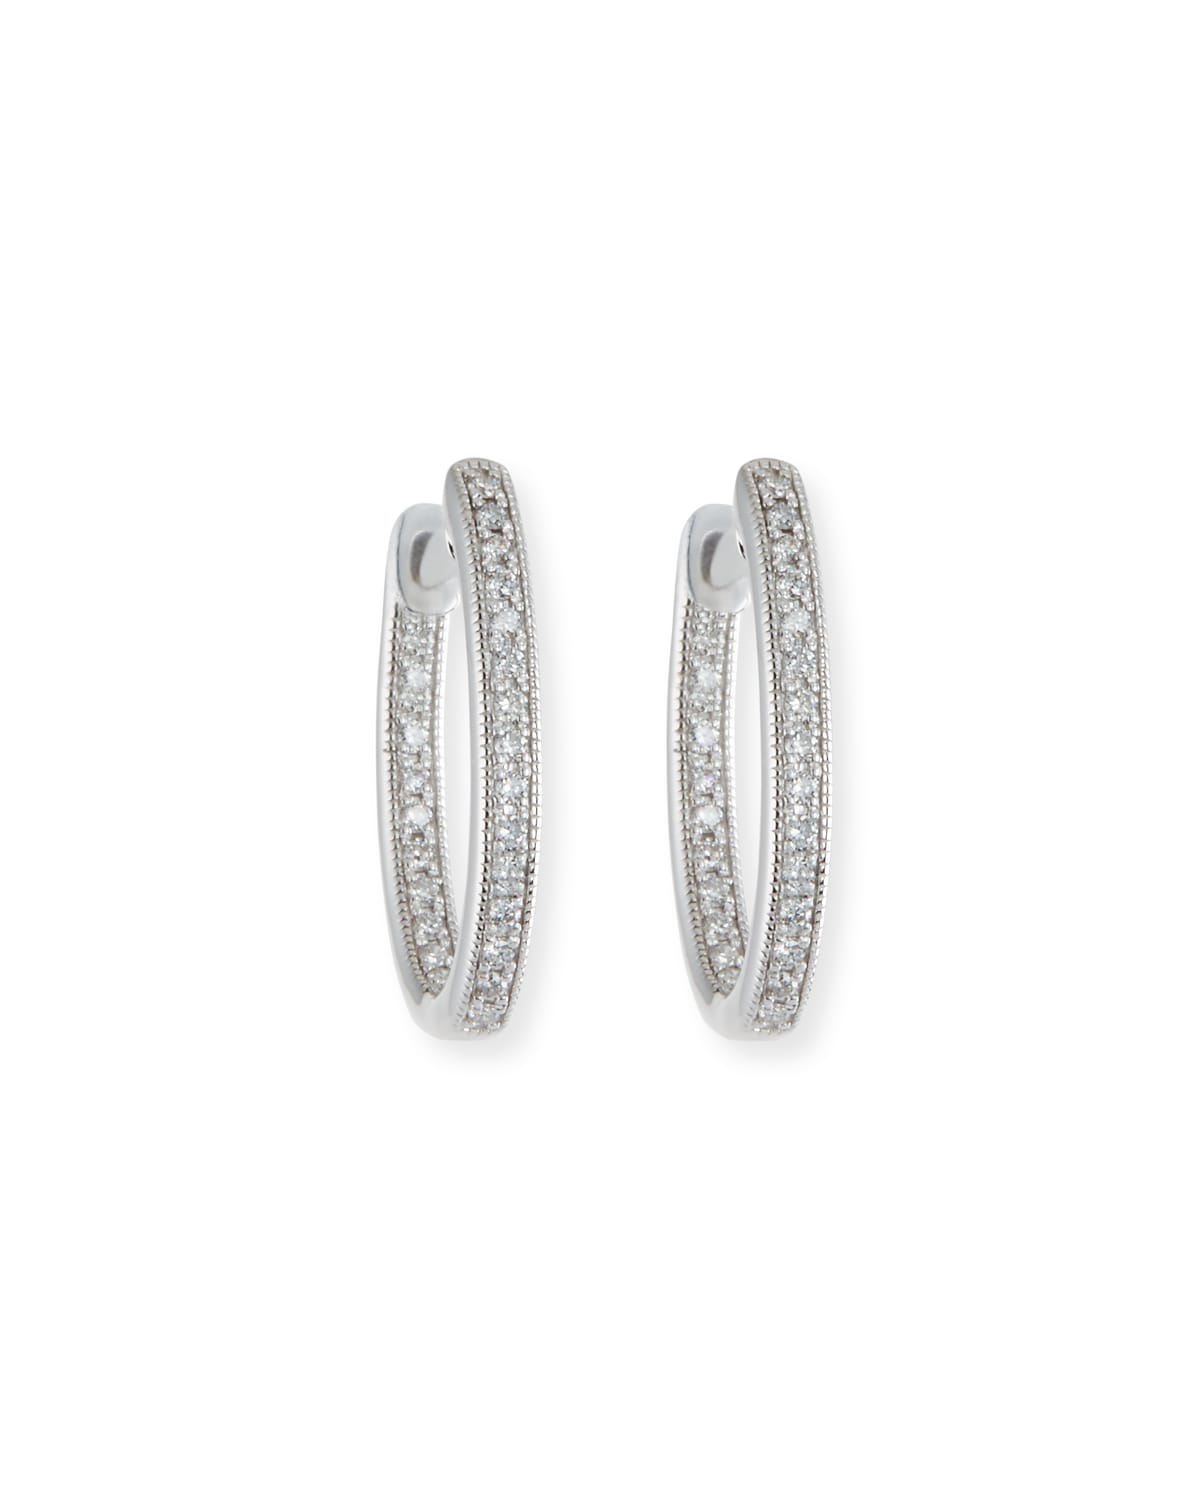 Jude Frances Lisse Small Diamond Hoop Earrings In 18k White Gold